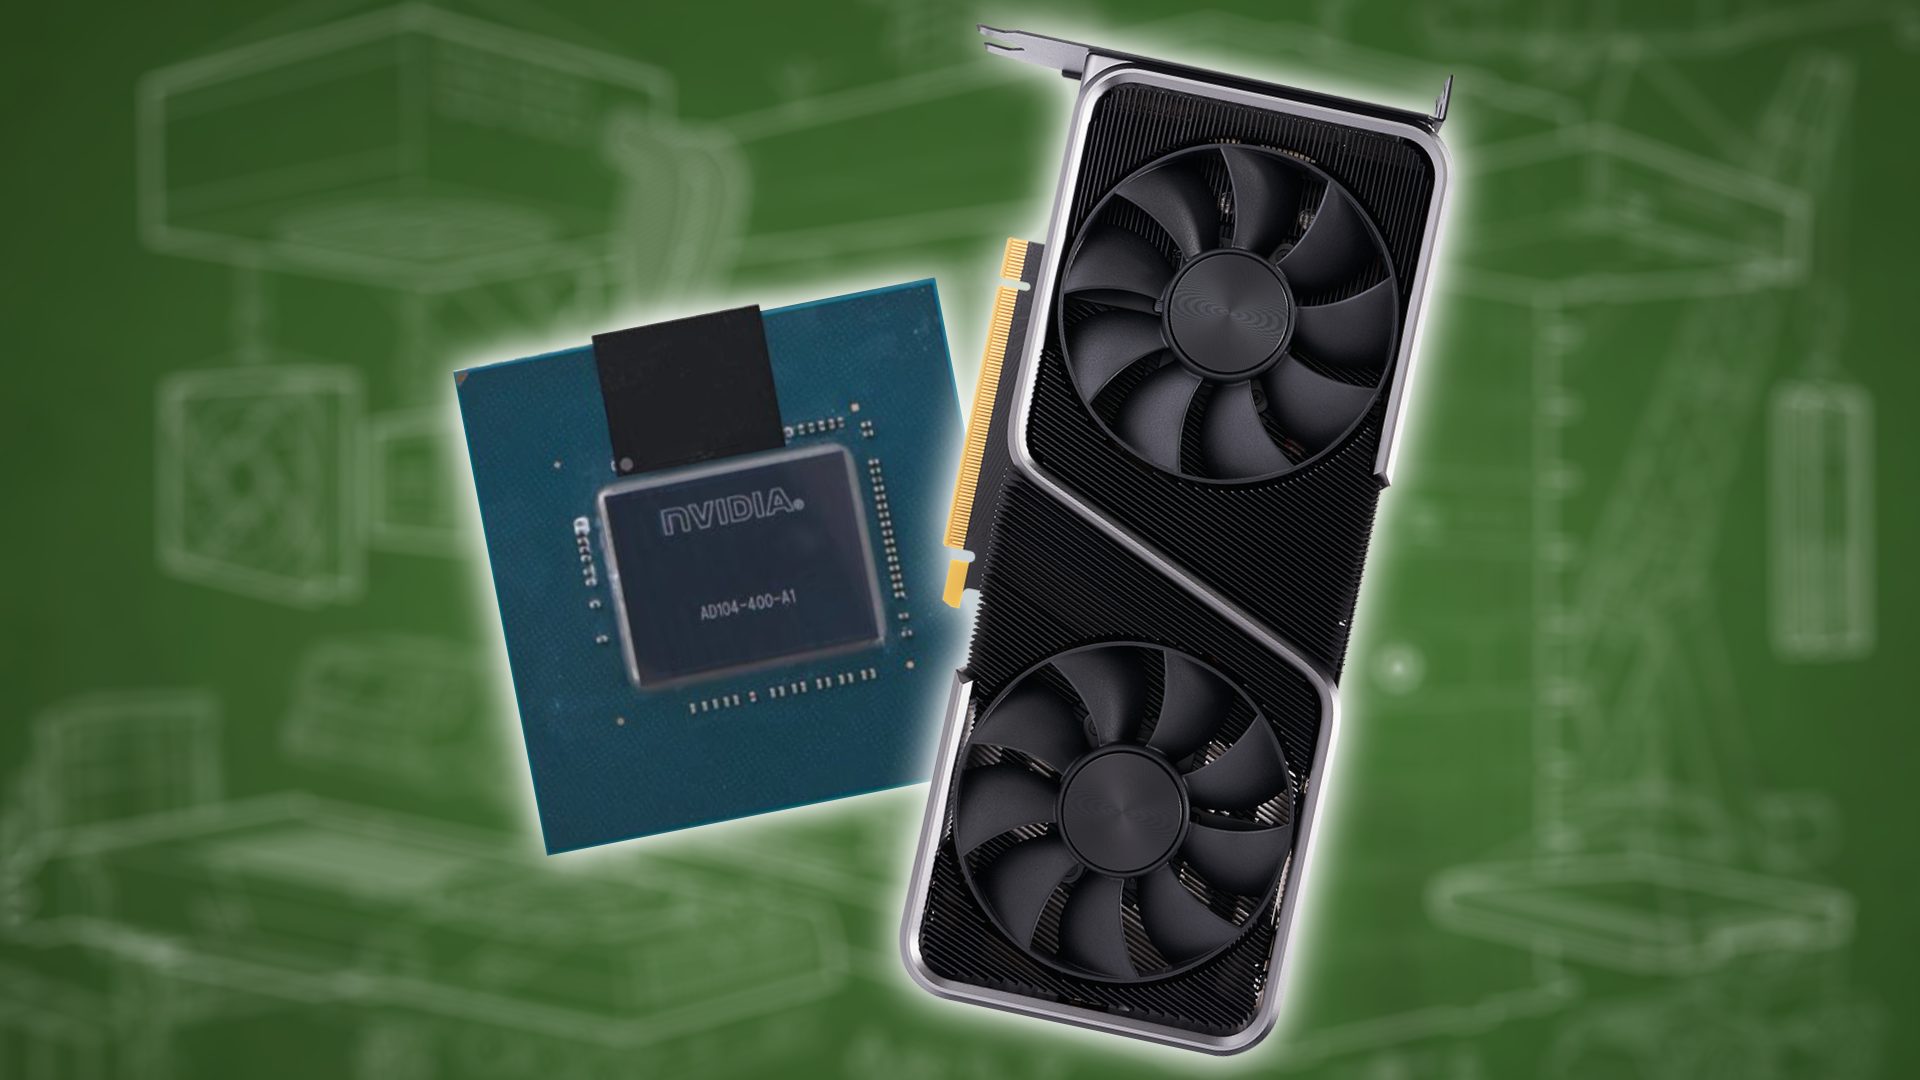 Nvidia RTX 4070 Ti images provide a glimpse at upcoming GPU